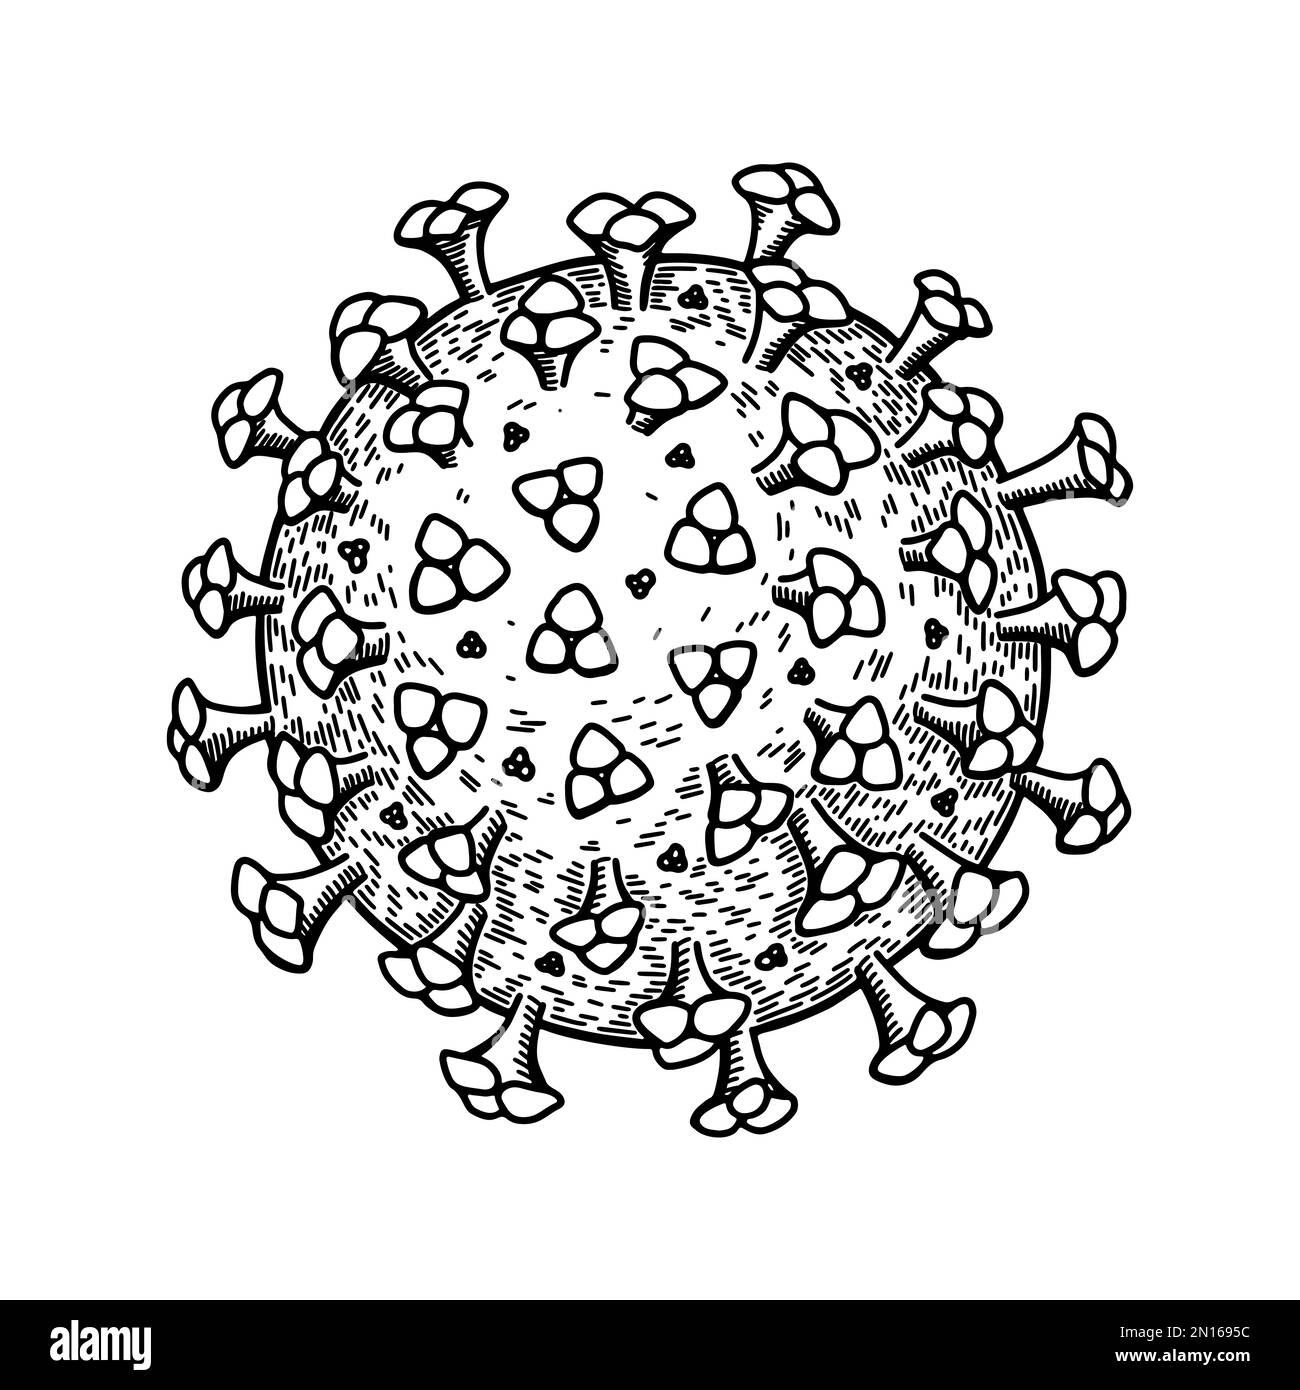 Coronavirus isolé sur fond blanc. Illustration vectorielle scientifique détaillée et réaliste, dessinée à la main, en style d'esquisse Illustration de Vecteur